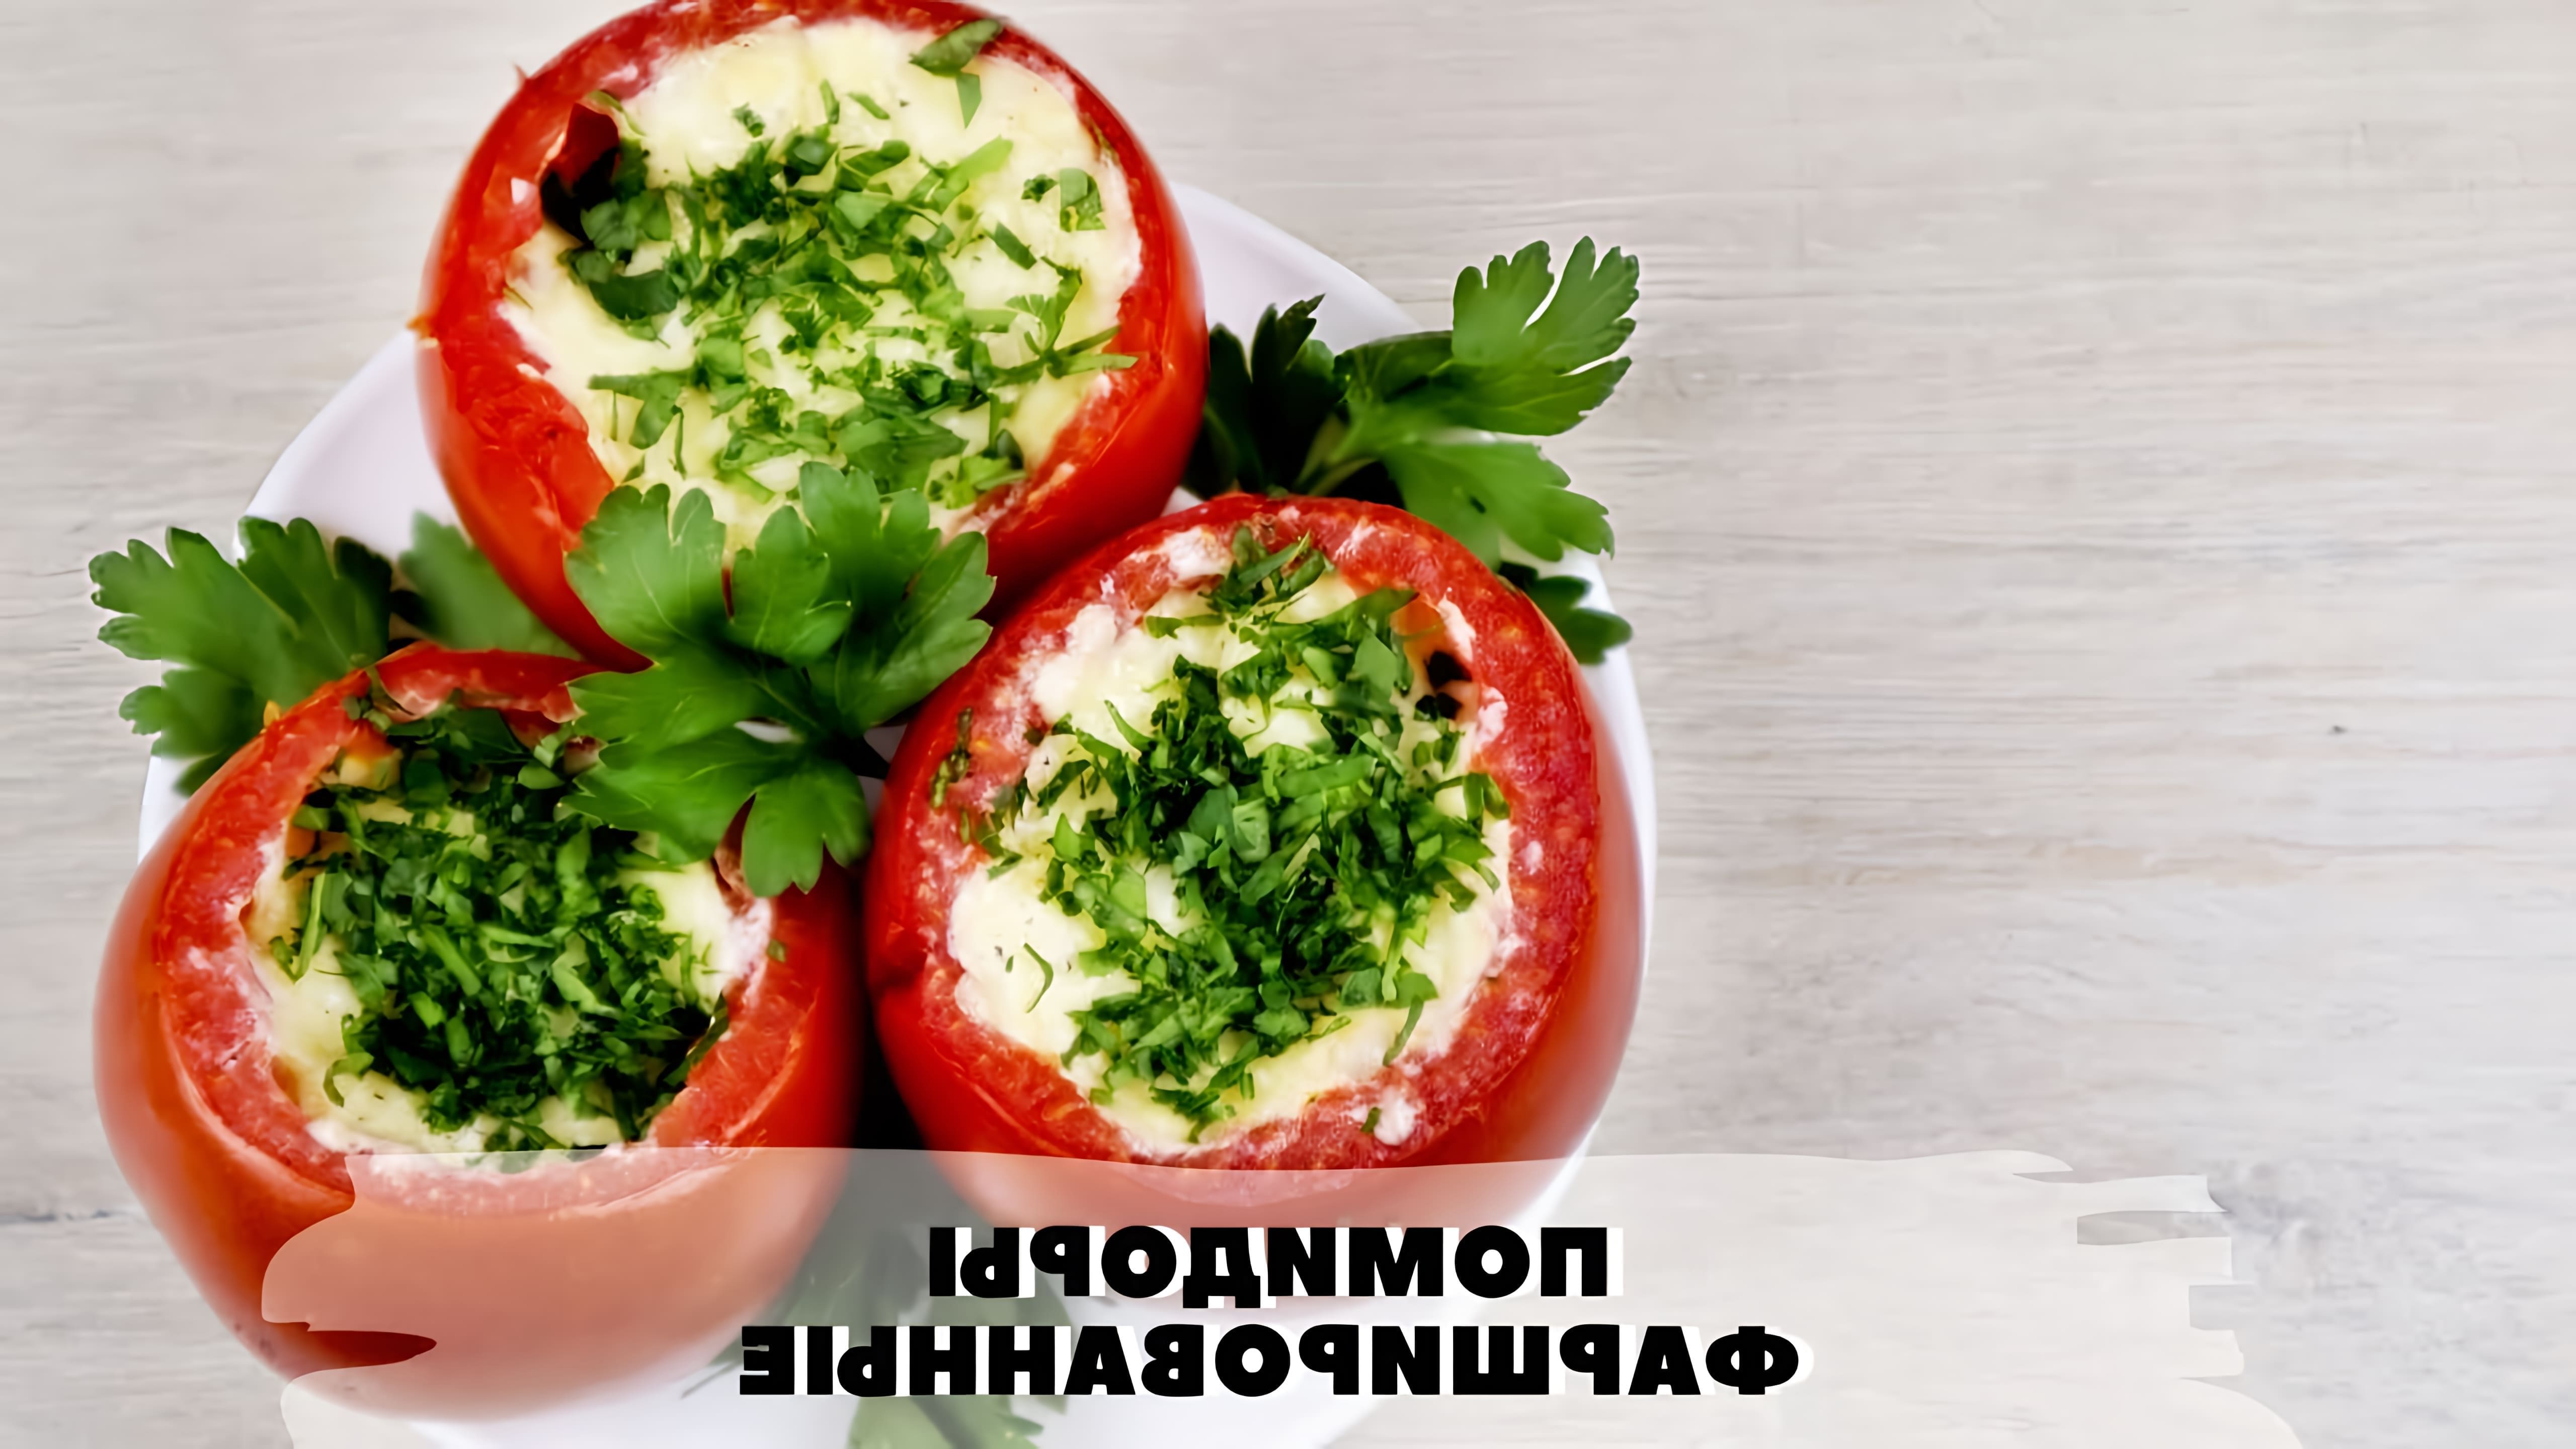 Фаршированные запеченные помидоры в духовке - это вкусное и полезное блюдо, которое можно приготовить в домашних условиях